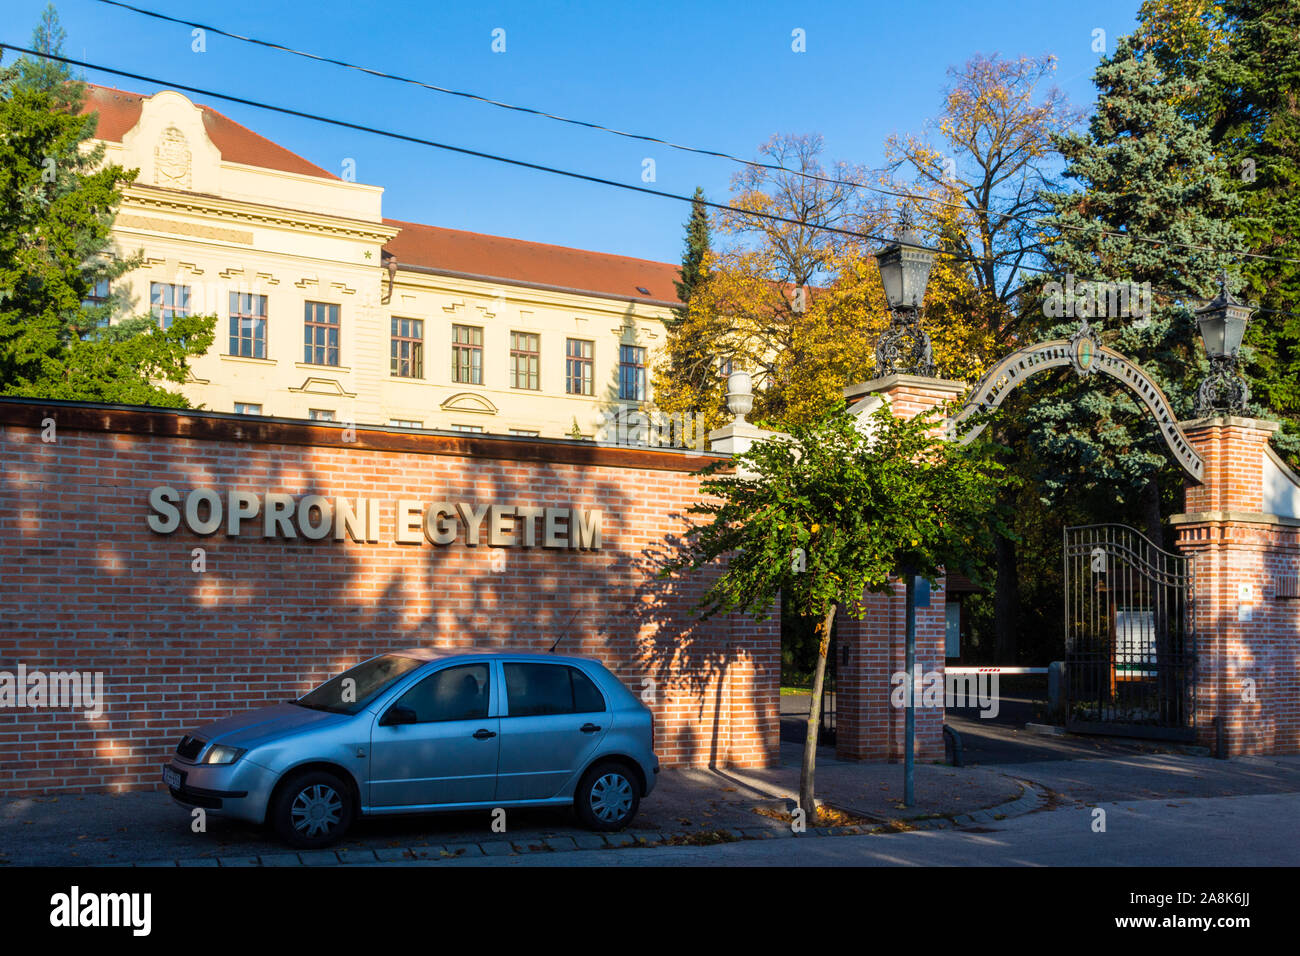 University of Sopron (Soproni Egyetem) main entrance, Sopron, Hungary Stock Photo